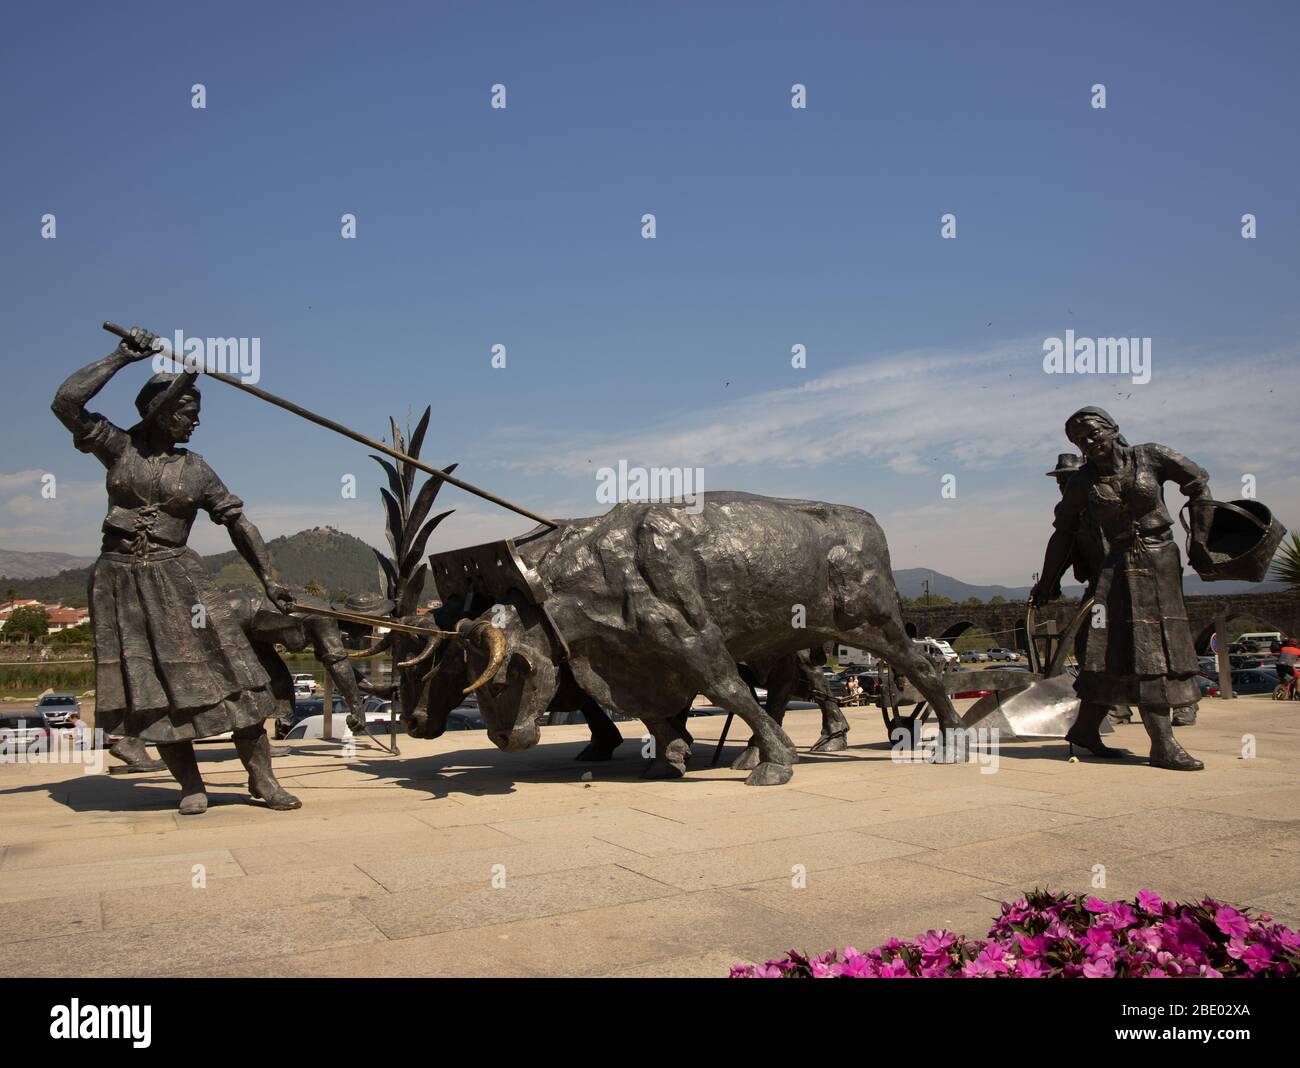 Monument pour honorer ceux qui travaillent comme agriculteurs avec des sculptures labourant, semant et récoltant Ponte de Lima Nord du Portugal Banque D'Images